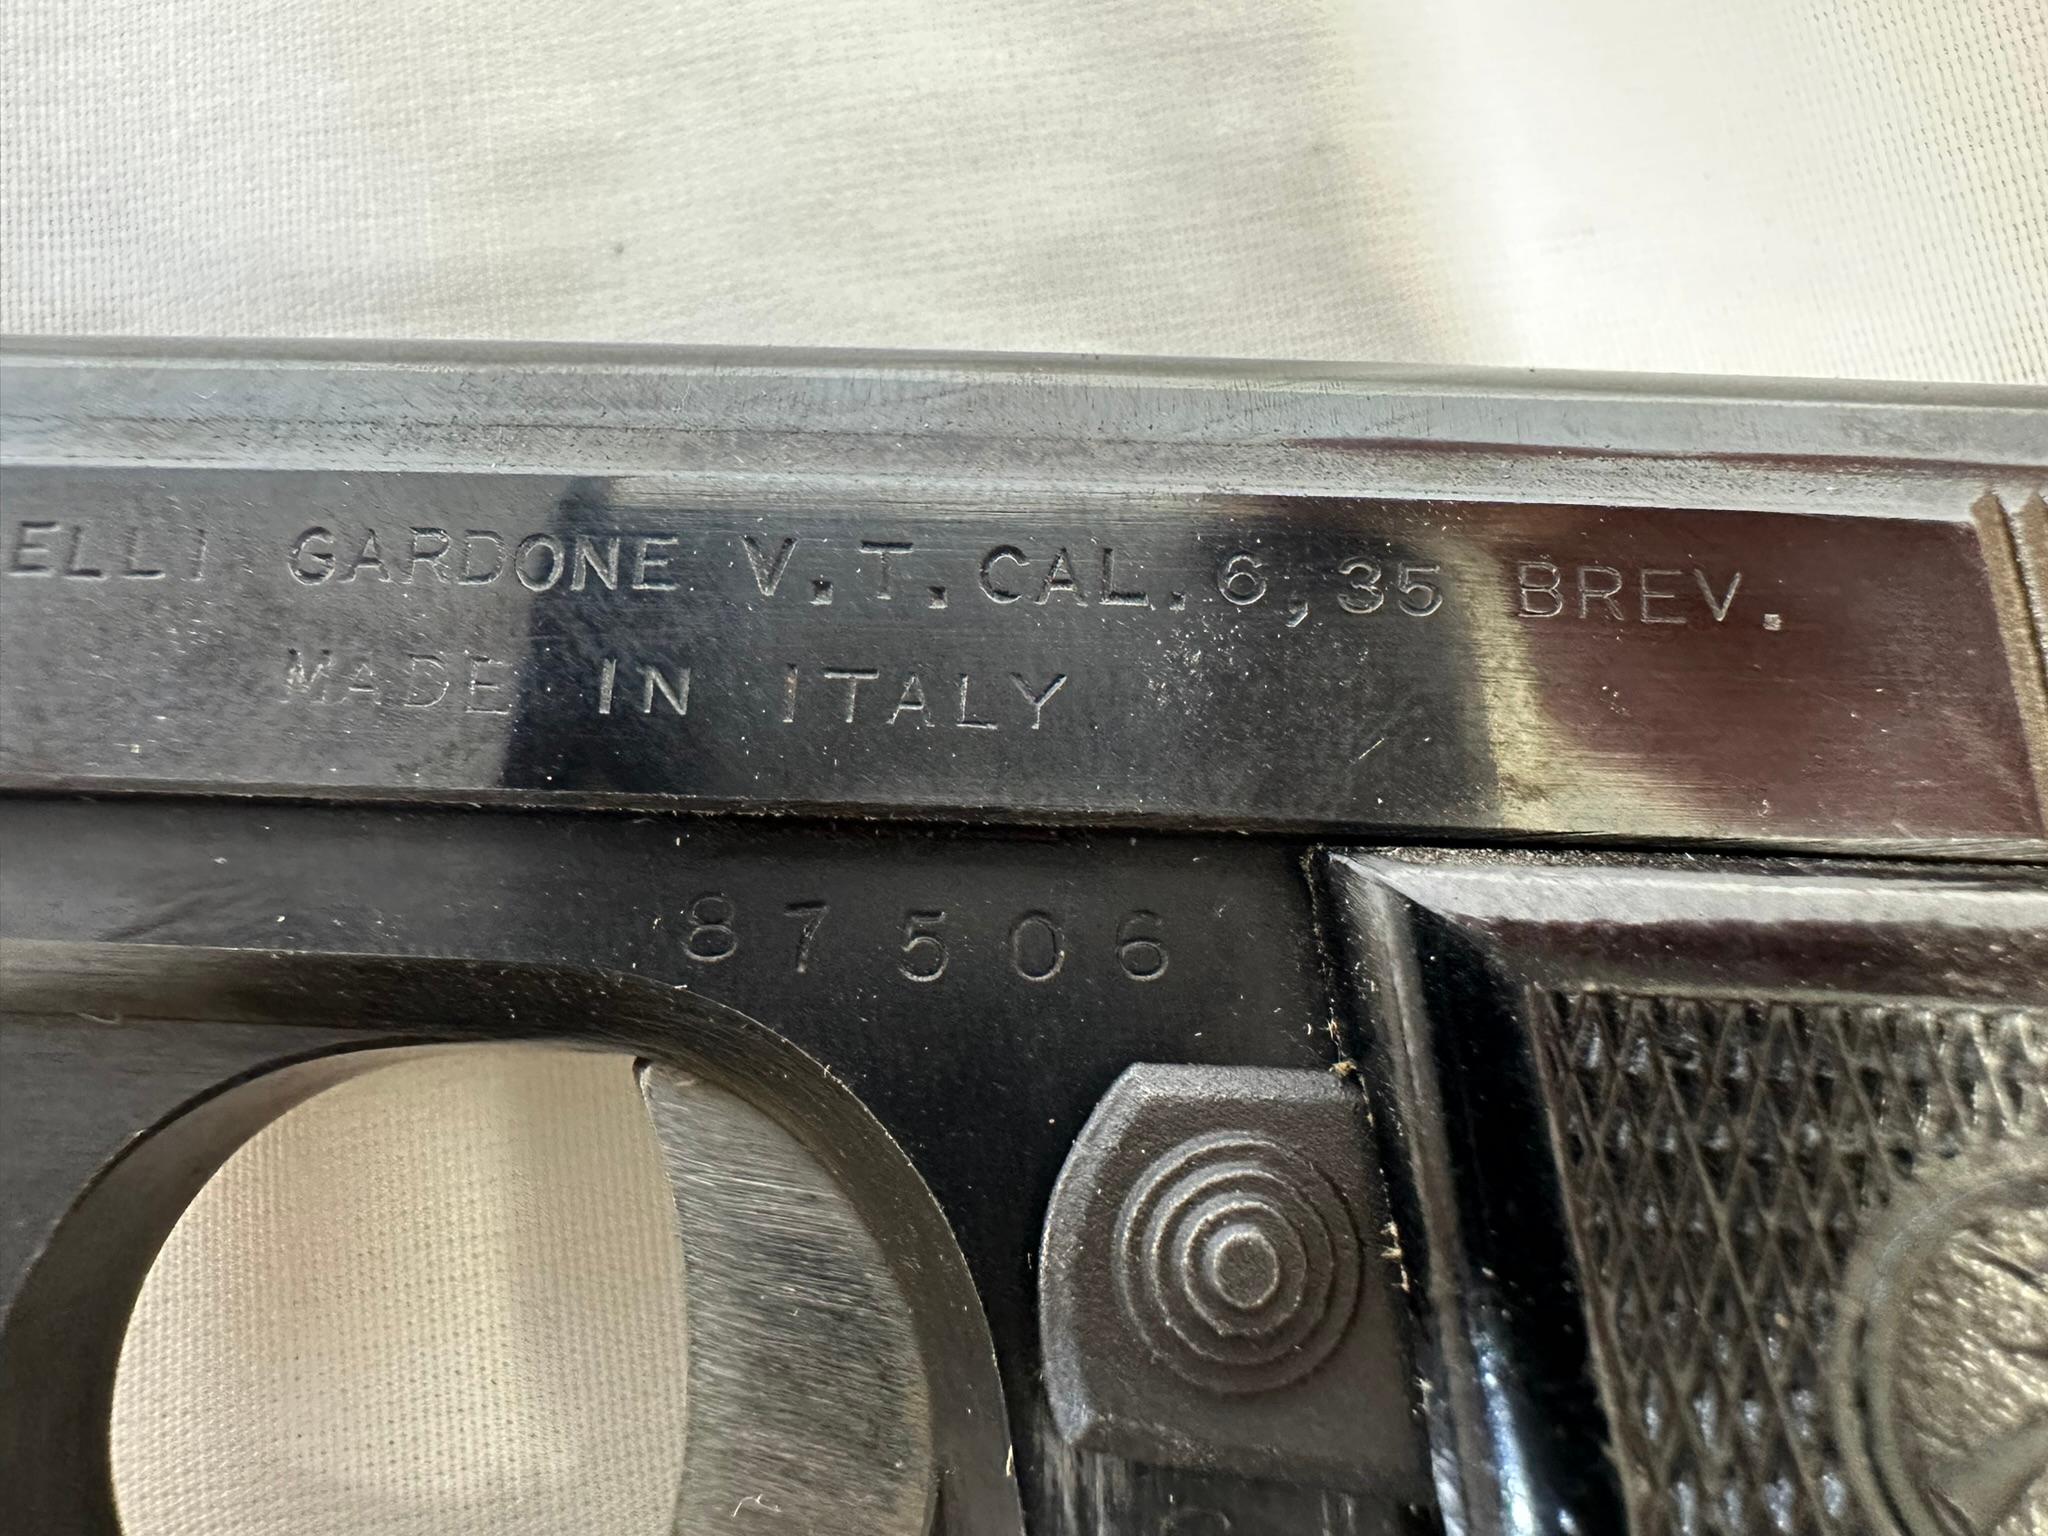 V Bernardelli Gardone VT 6.35 semi-auto pistol